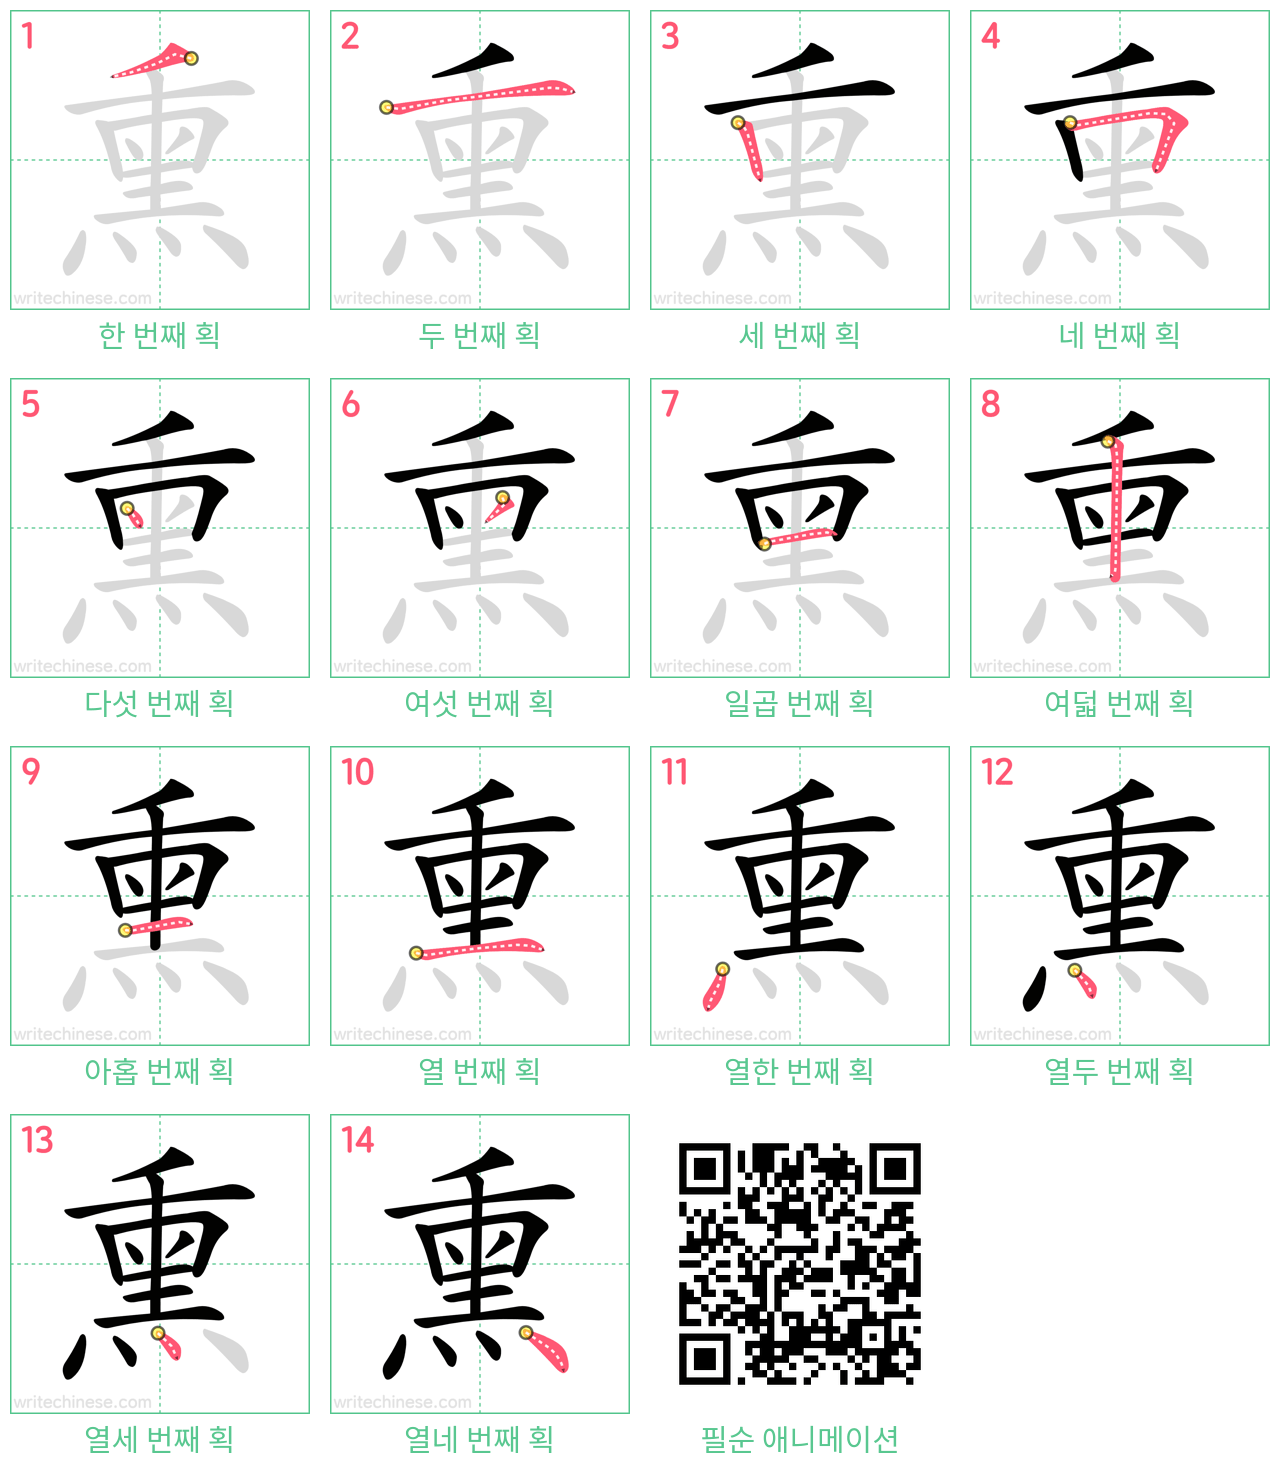 熏 step-by-step stroke order diagrams